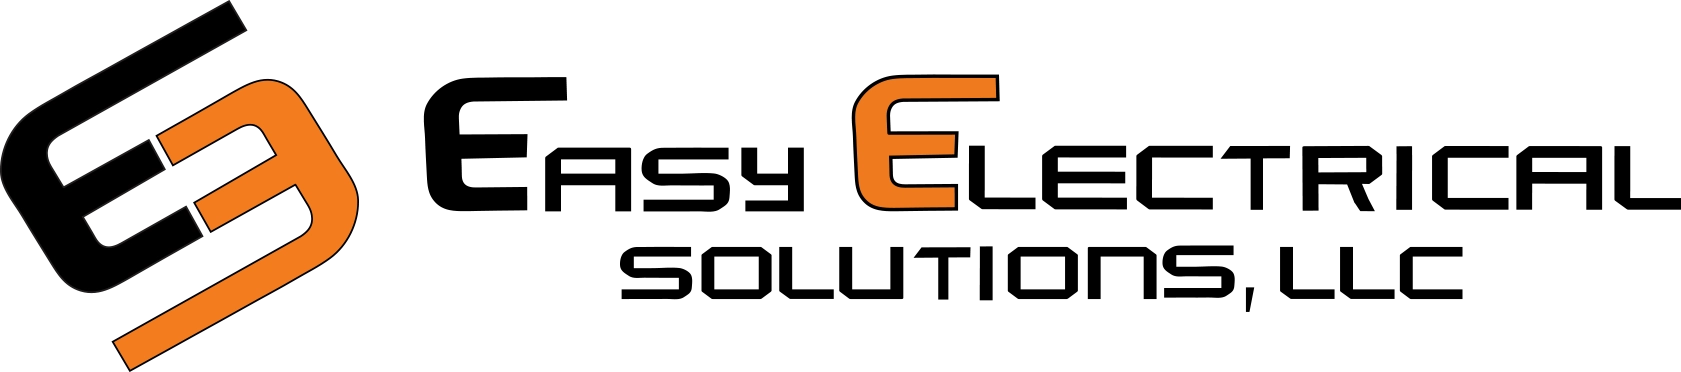 Easy Electric LLC Logo